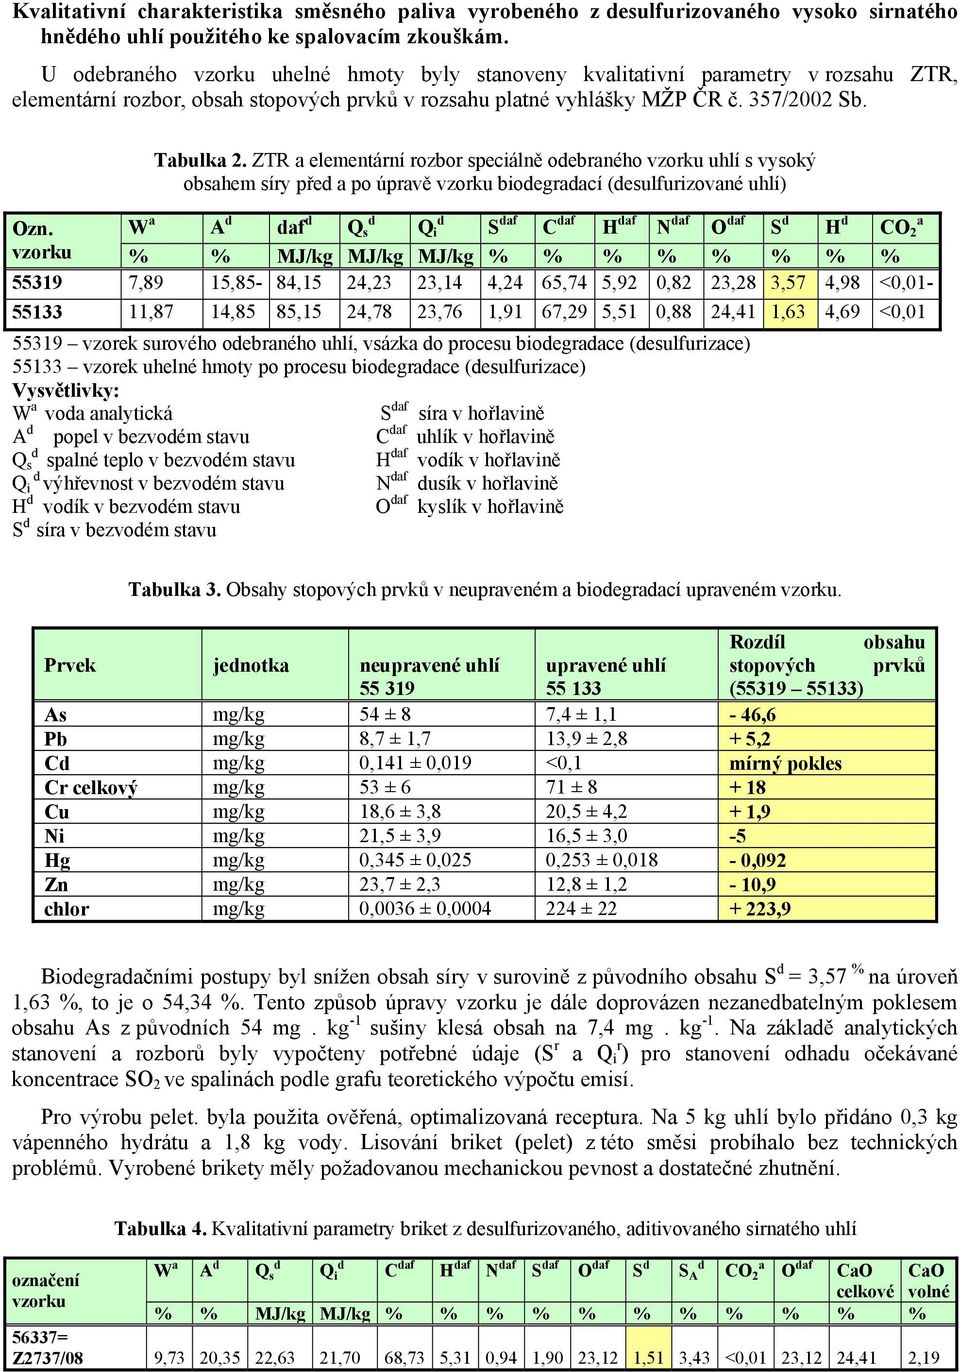 ZTR a elementární rozbor speciálně odebraného vzorku uhlí s vysoký obsahem síry před a po úpravě vzorku biodegradací (desulfurizované uhlí) W a A d daf d d d Q s Q i S daf C daf H daf N daf O daf S d